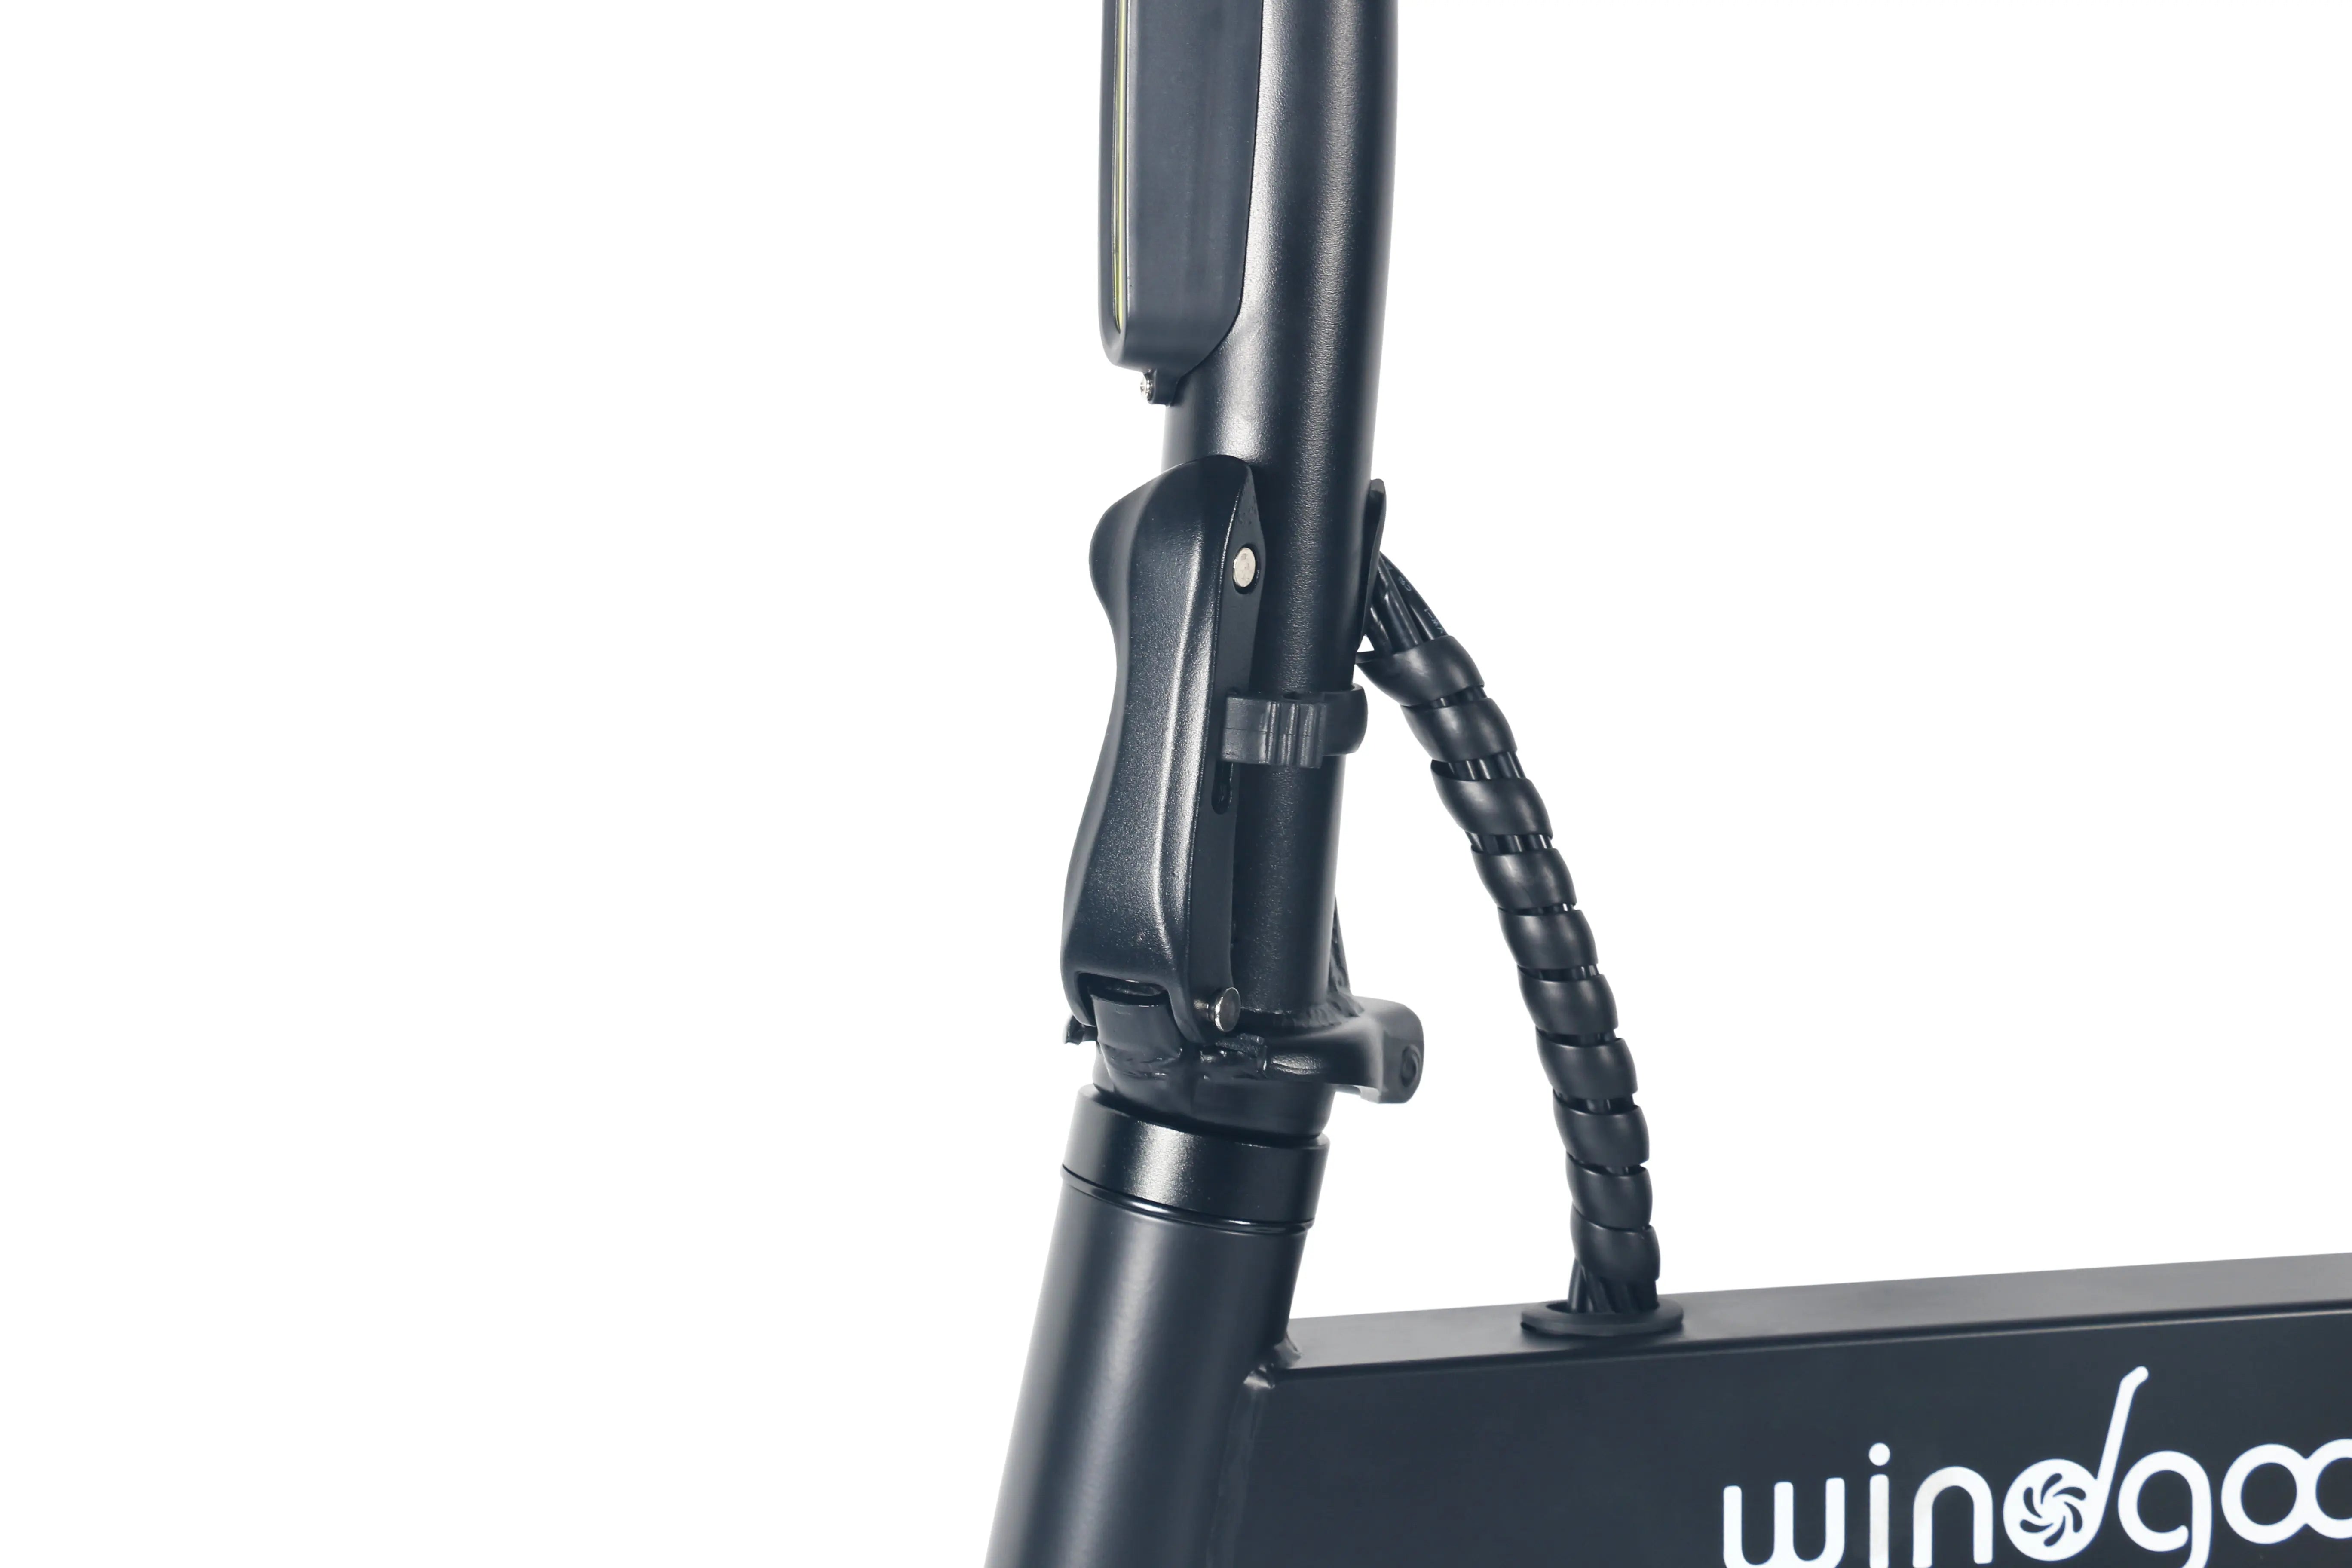 Windgoo B20 Elektrische Vouwfiets AE-trading